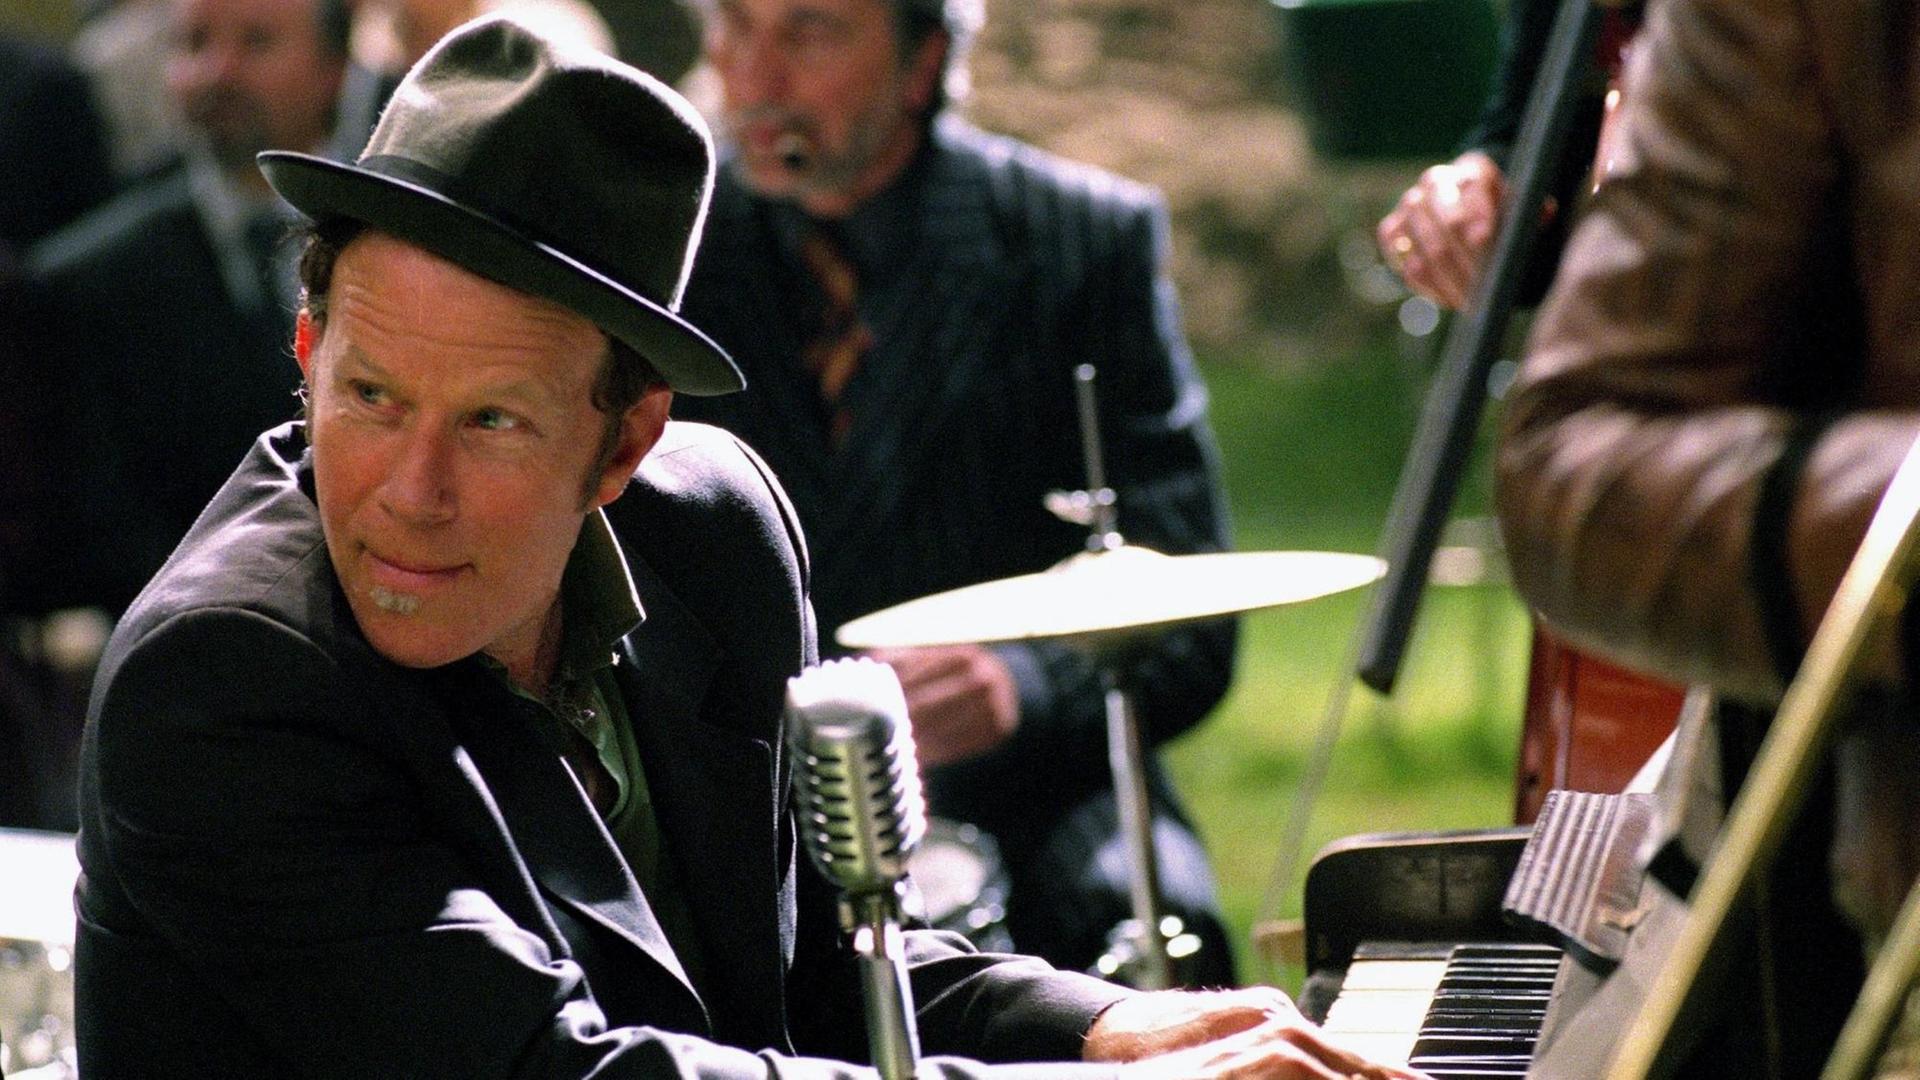 Schauspieler und Musiker Tom Waits sitzt mit Hut bekleidet an einem Klavier in dem Film "Der Tiger und der Schnee" aus dem Jahr 2005.